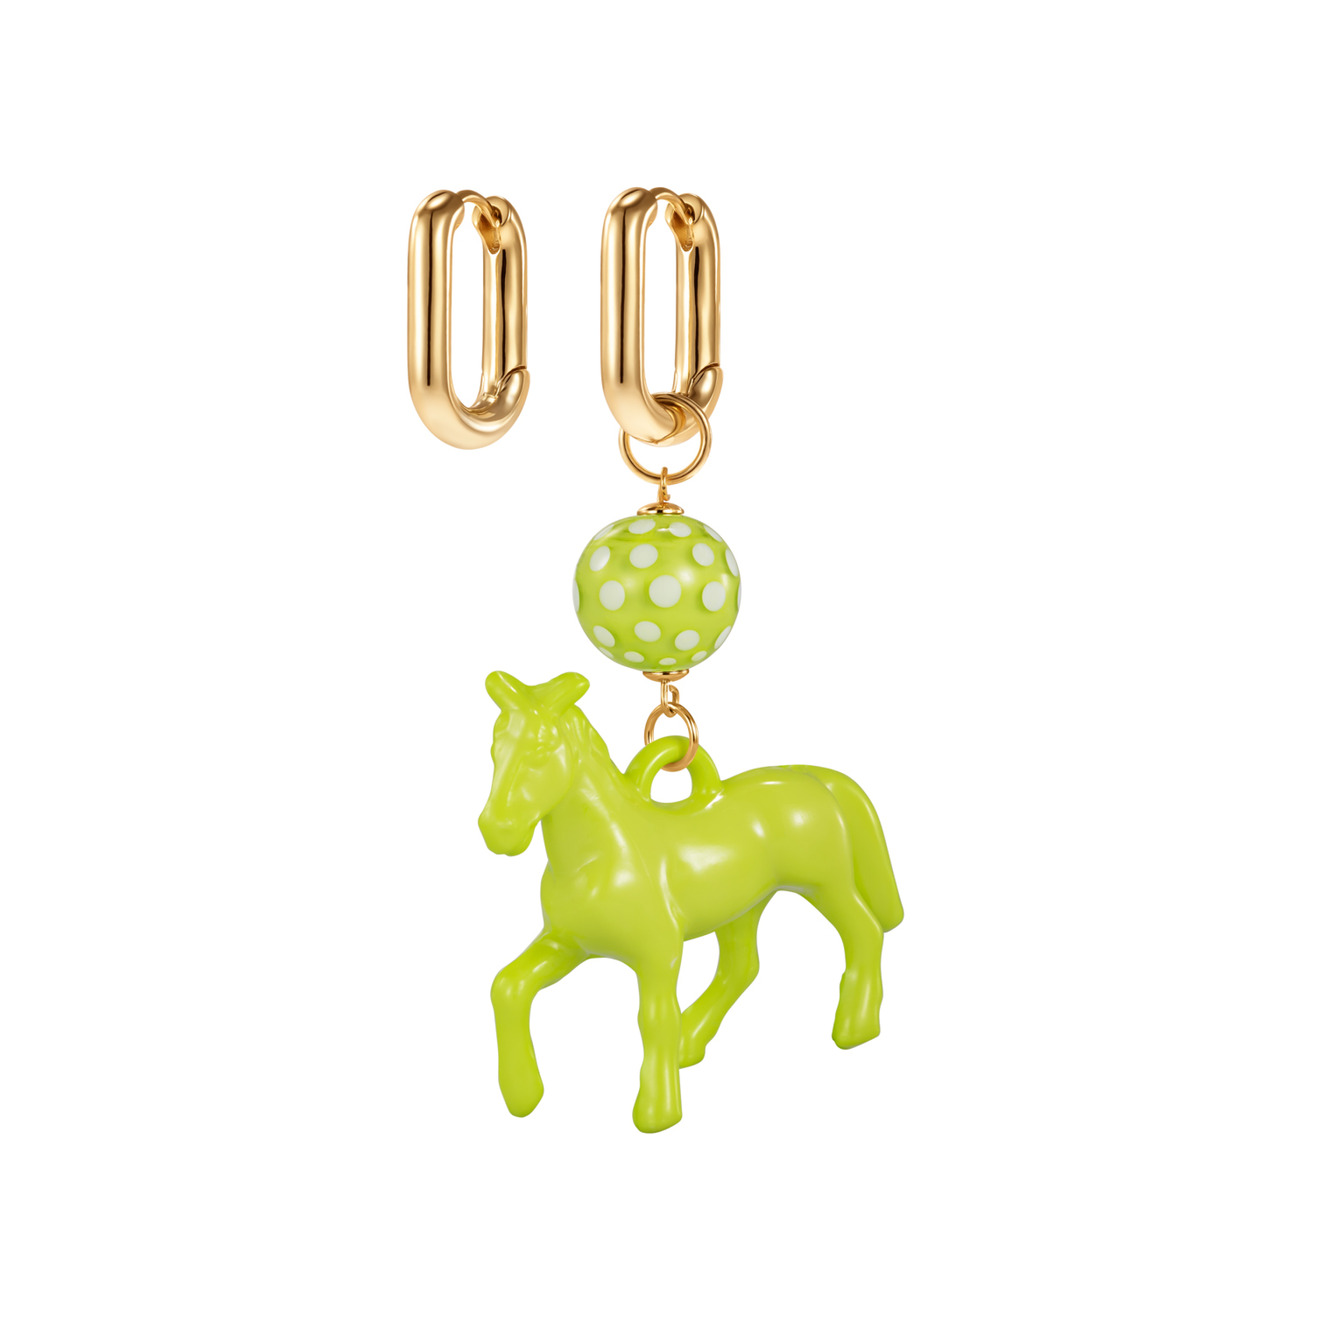 Kotlo Studio Серьги с зеленой лошадкой и бусиной Мурано kotlo studio золотистые серьги с зеленой лошадкой и бусиной мурано